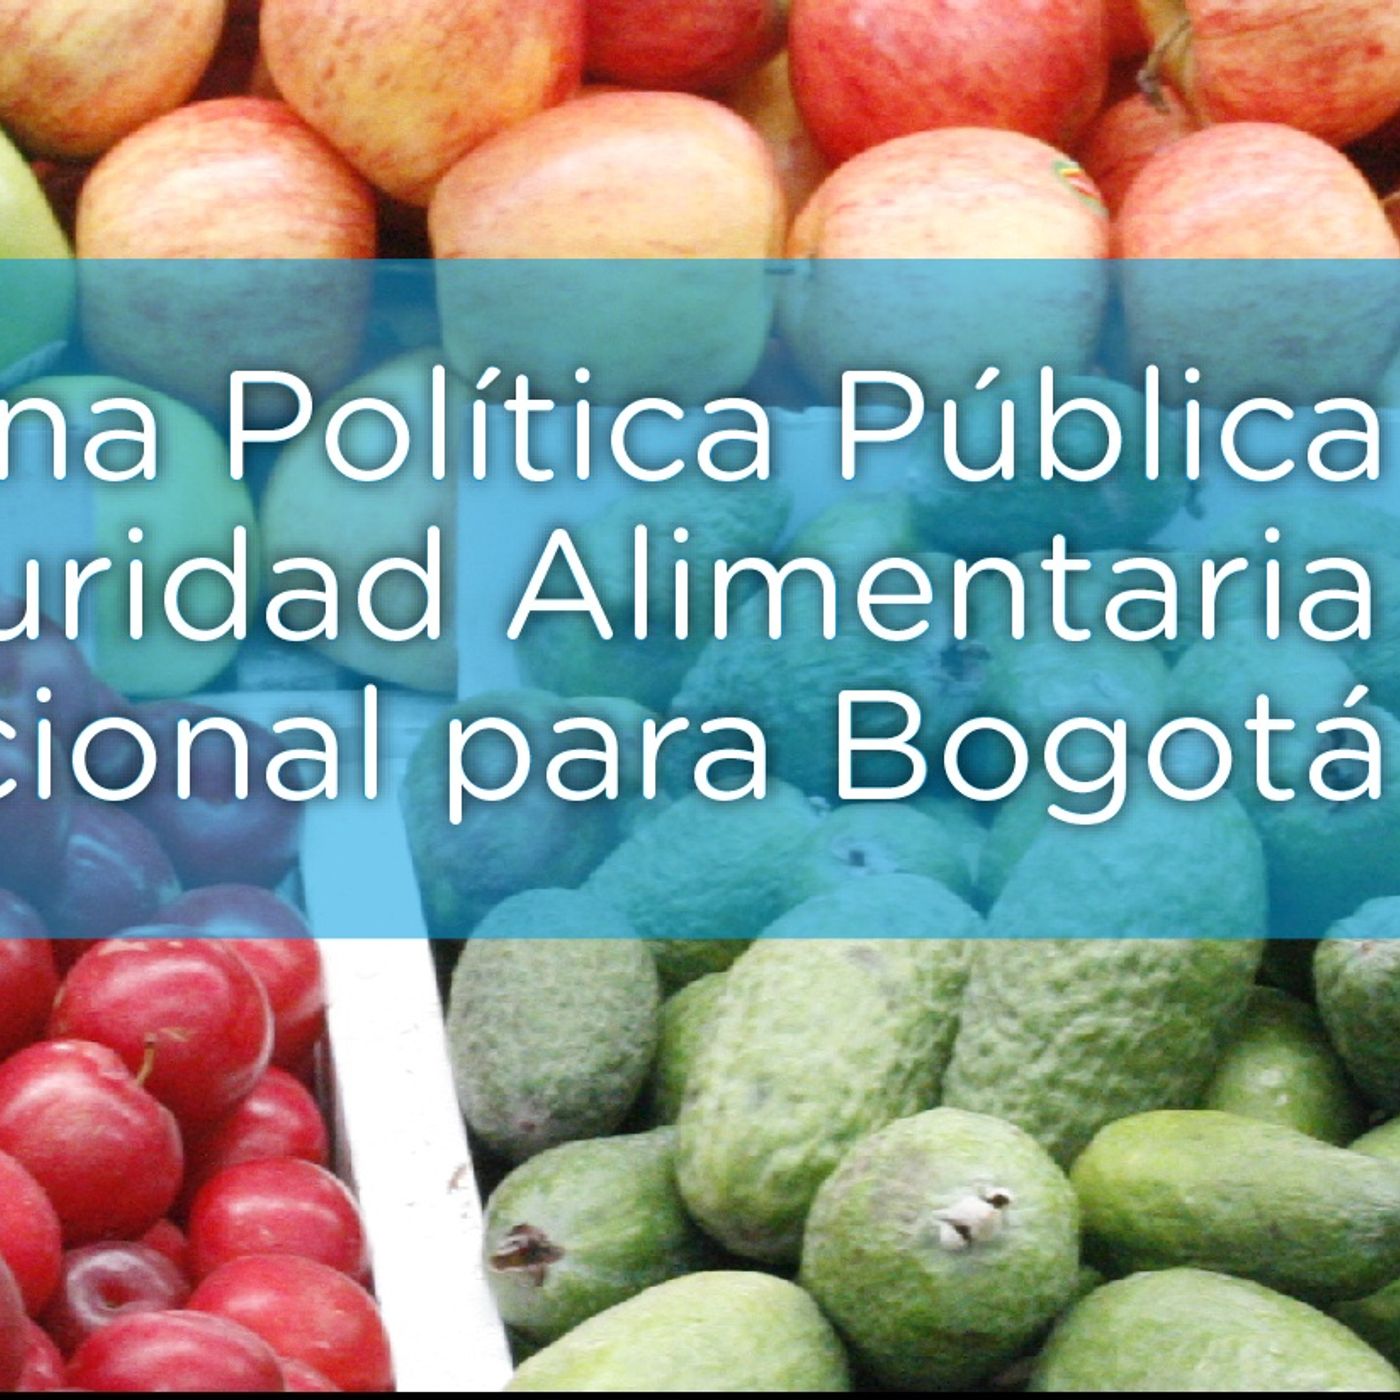 Soberanía y seguridad alimentaria en Bogotá